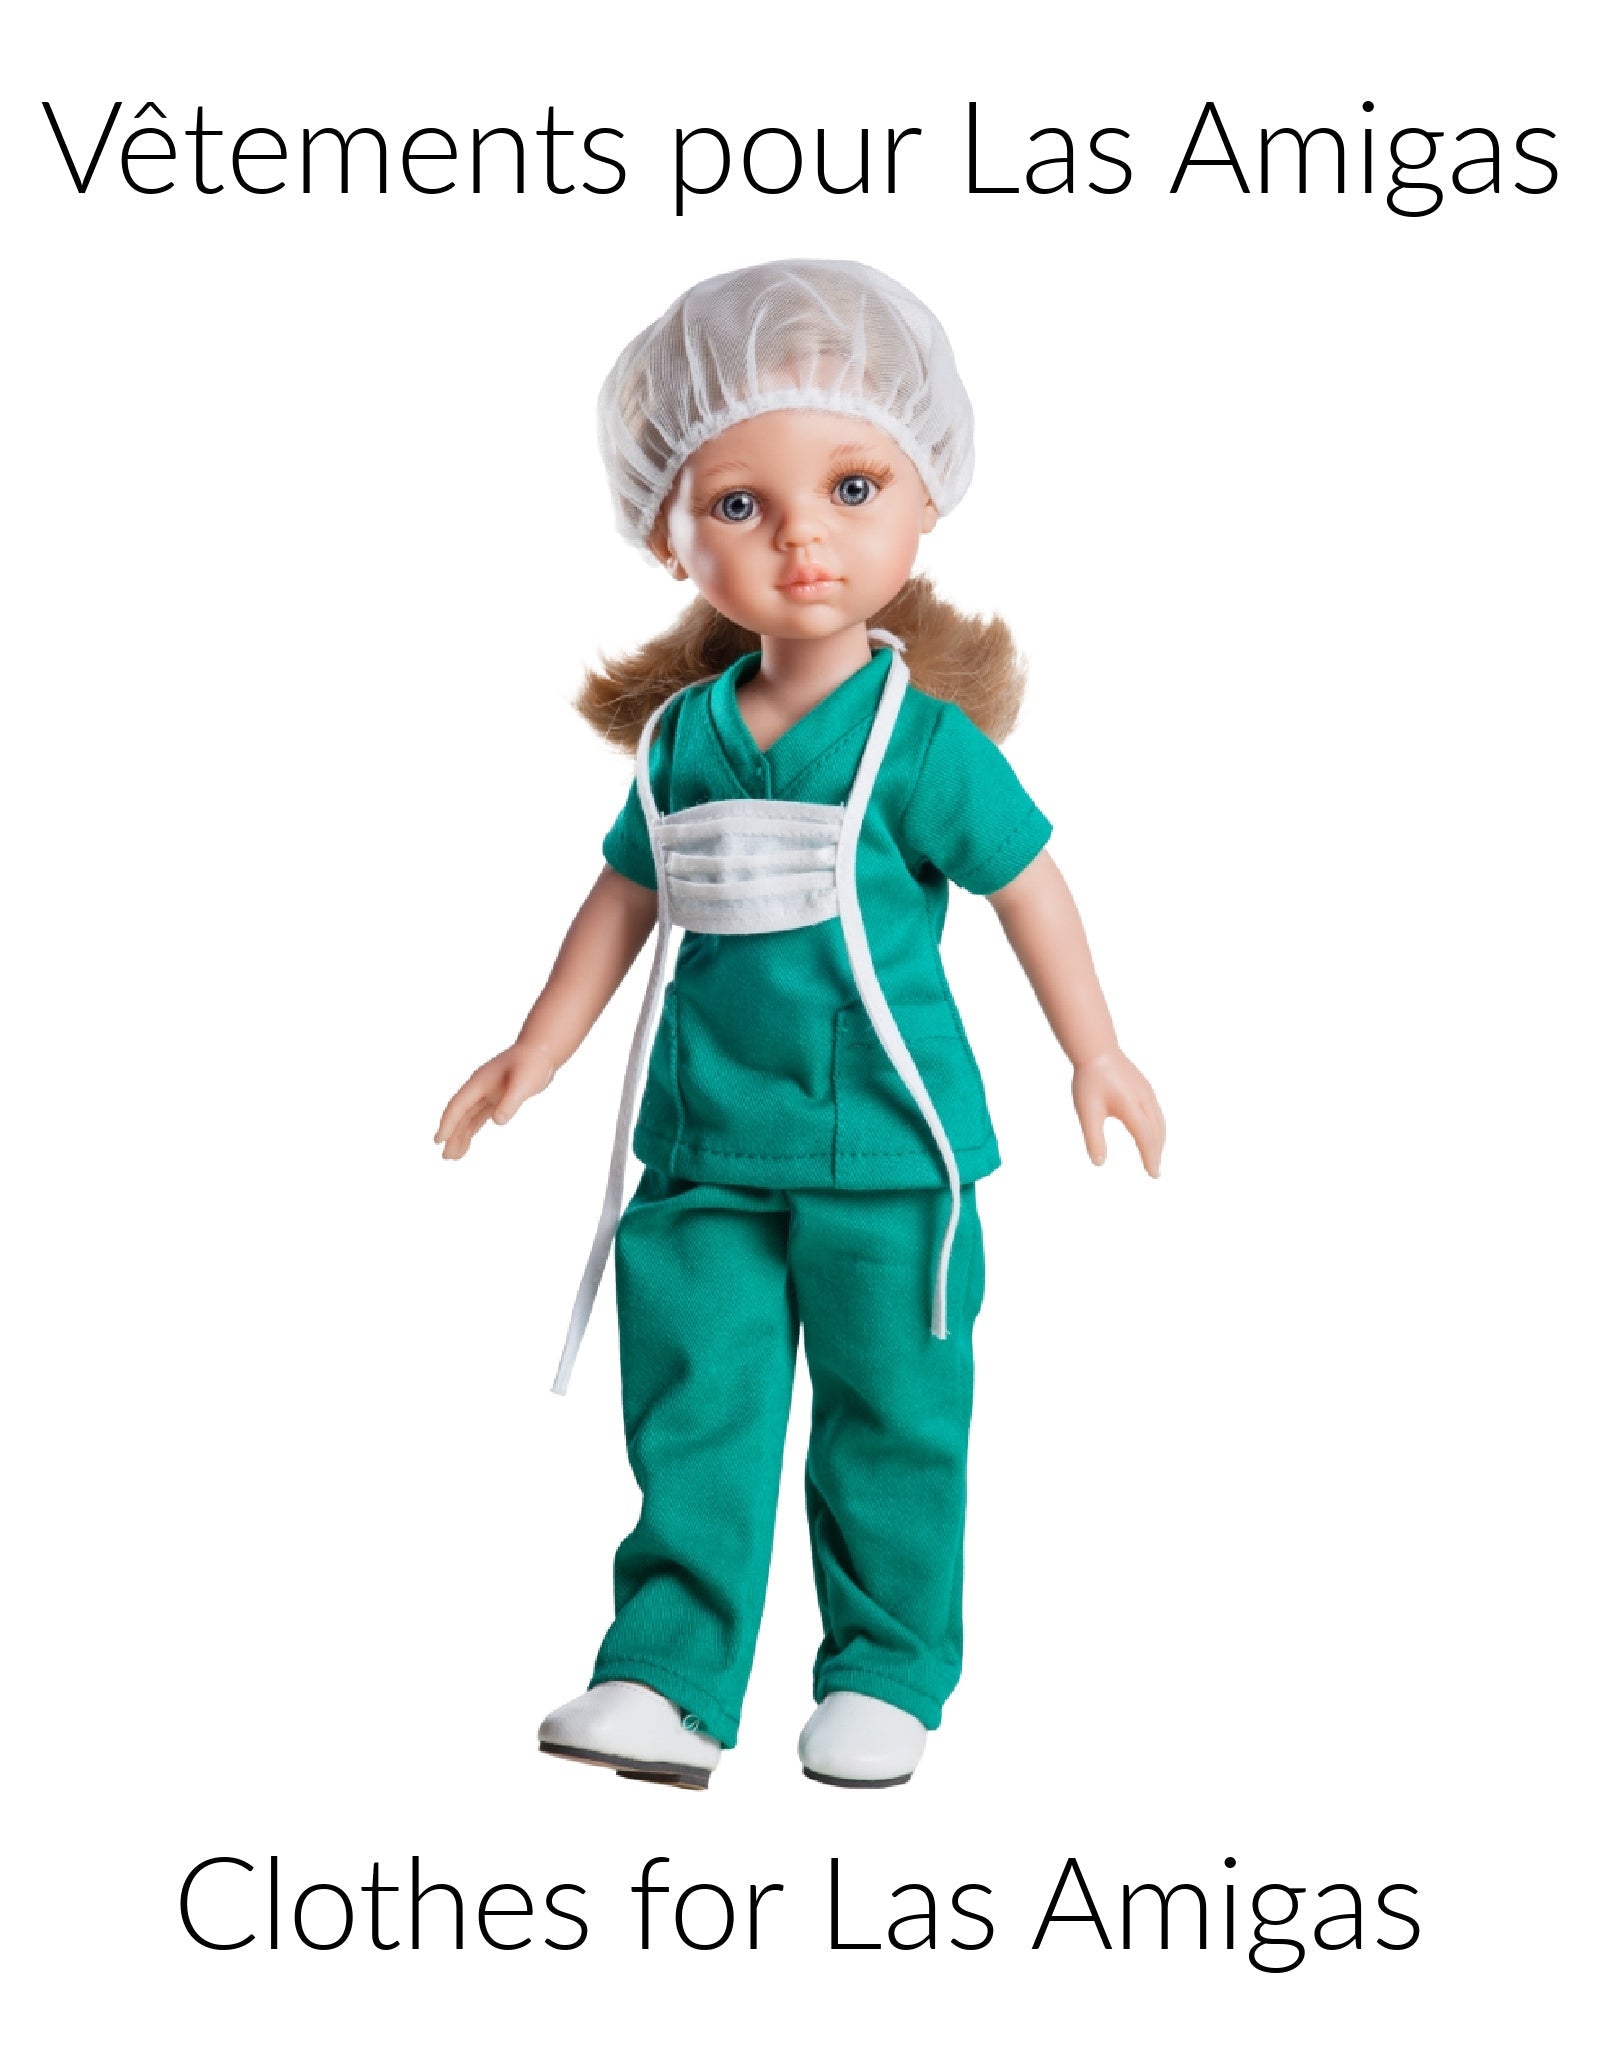 Vêtements pour poupée Las Amigas - Professionnel de la santé Carla - Paola  Reina - Vêtement de poupée